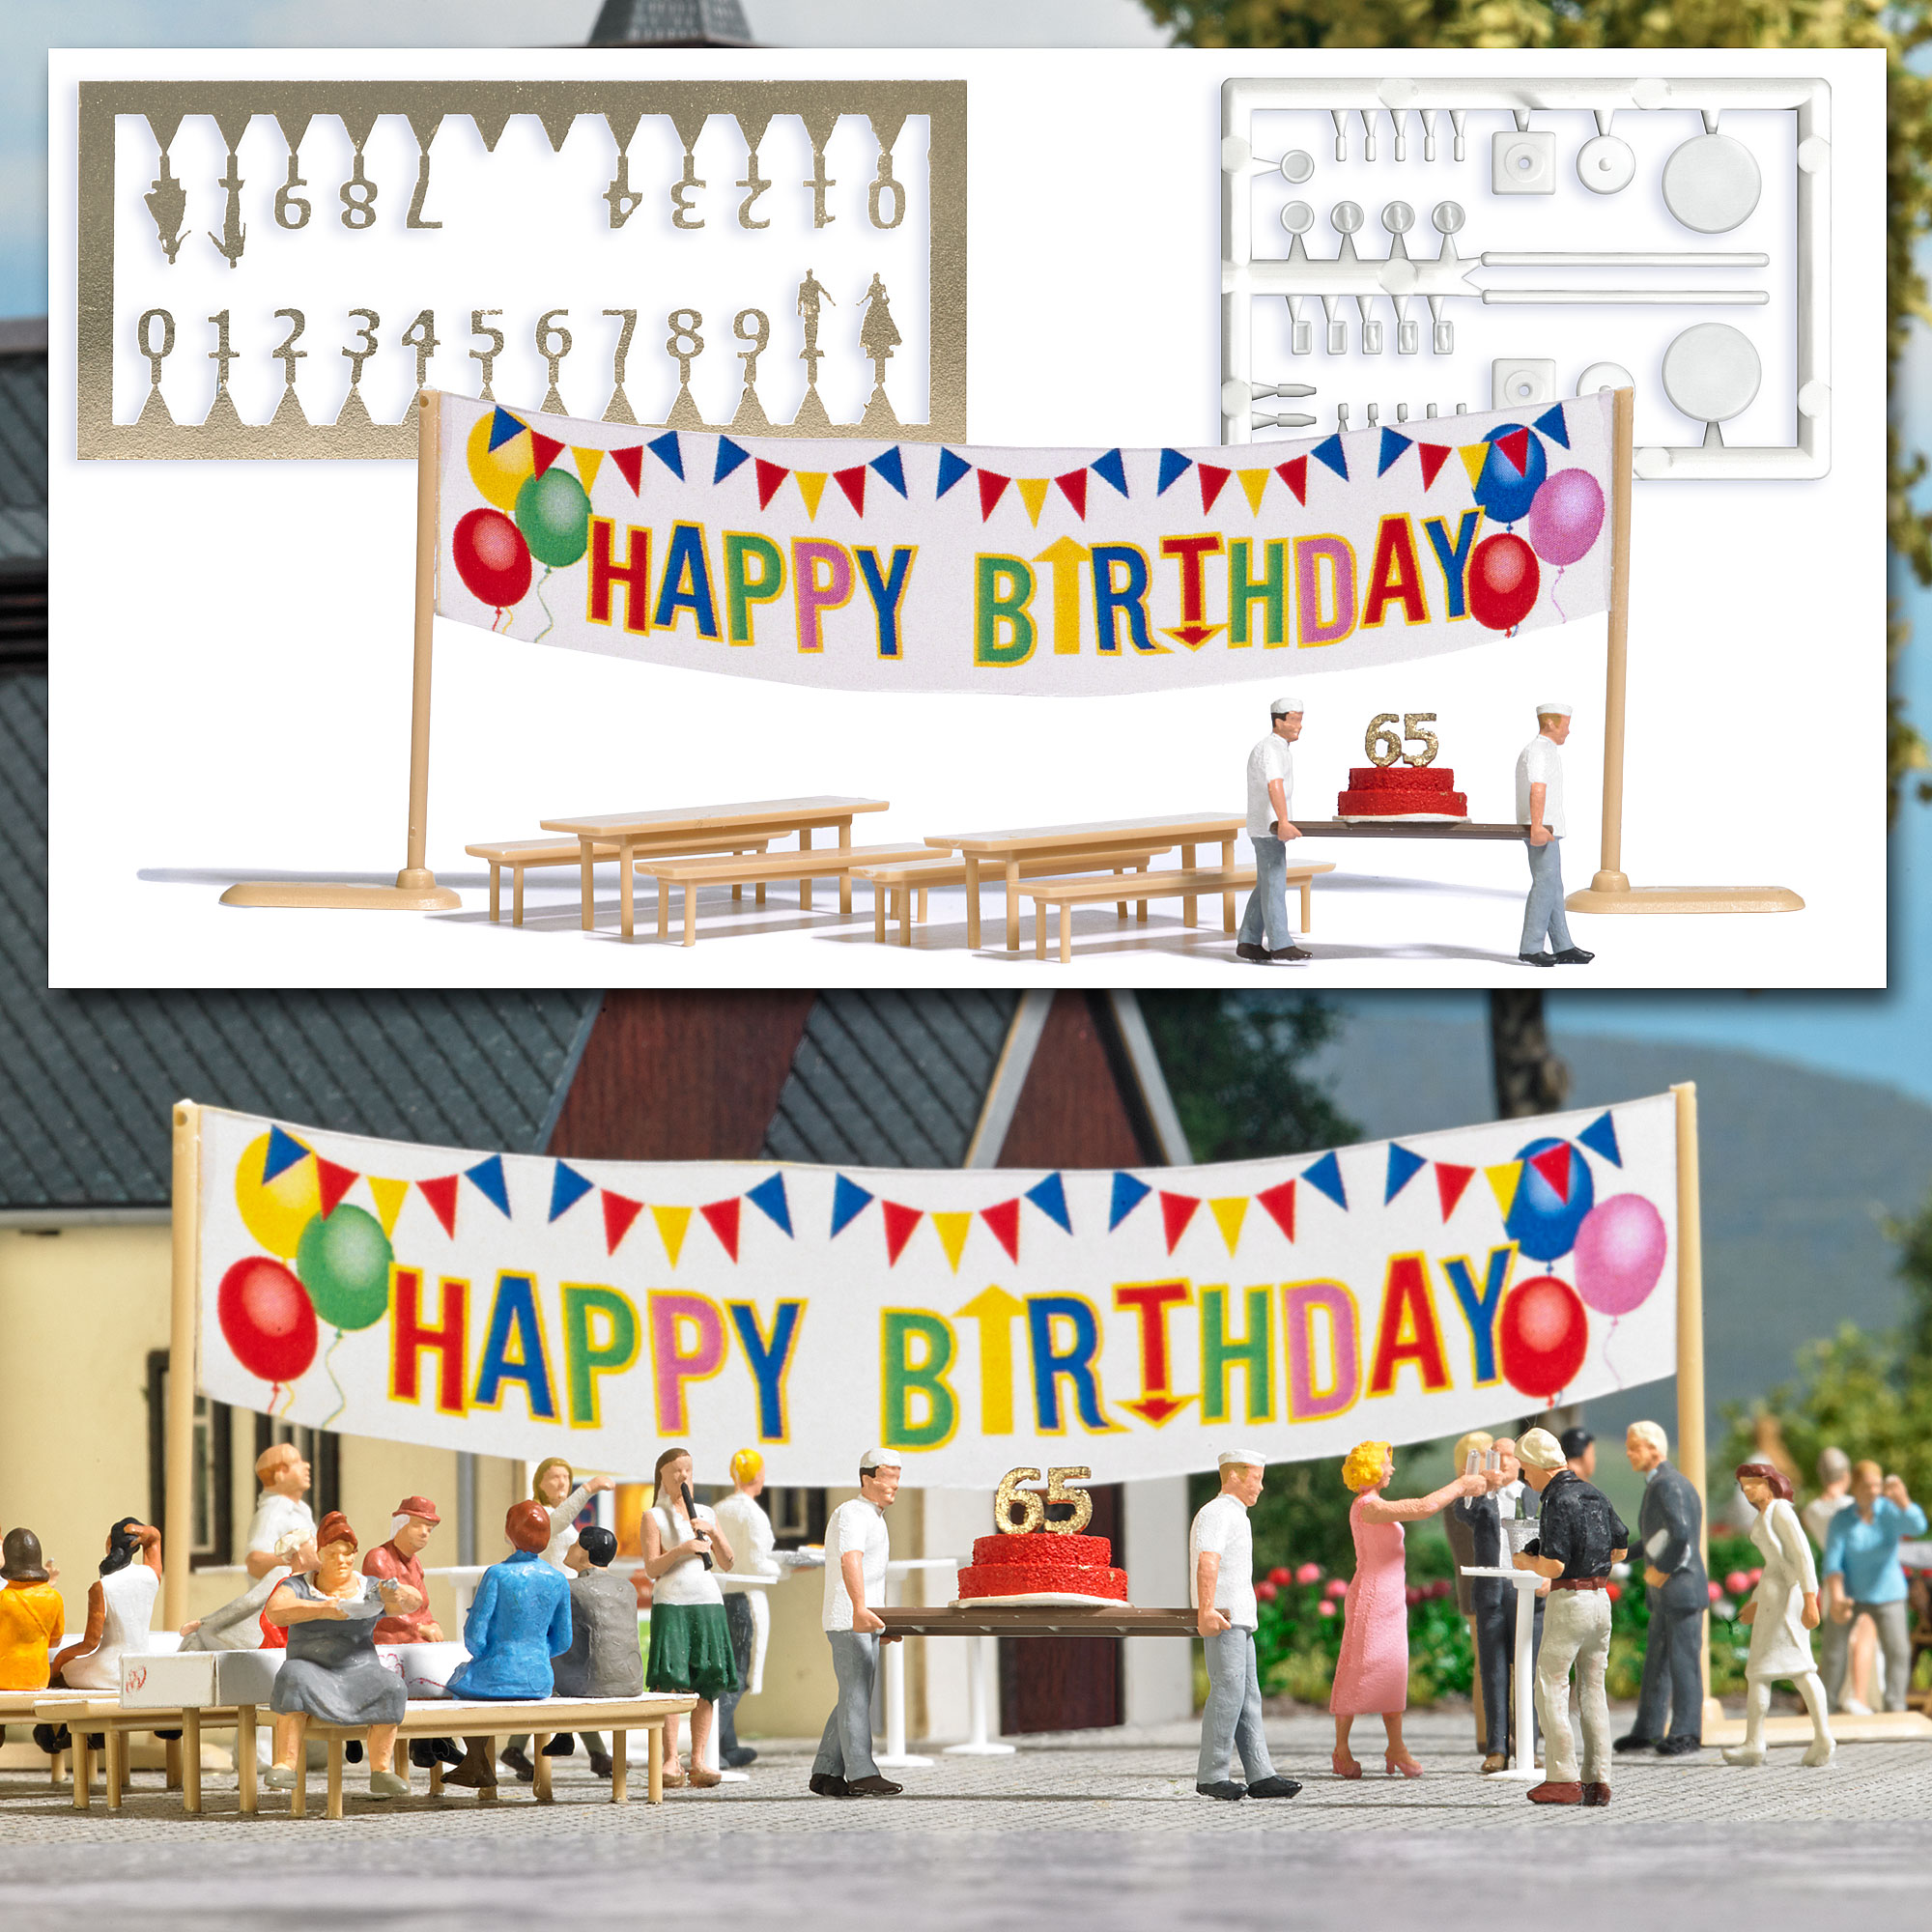 busch-6565-Happy-Birthday-Action-Partyset-Geburtstagstorte-Konditor-Torte-Festgarnitur